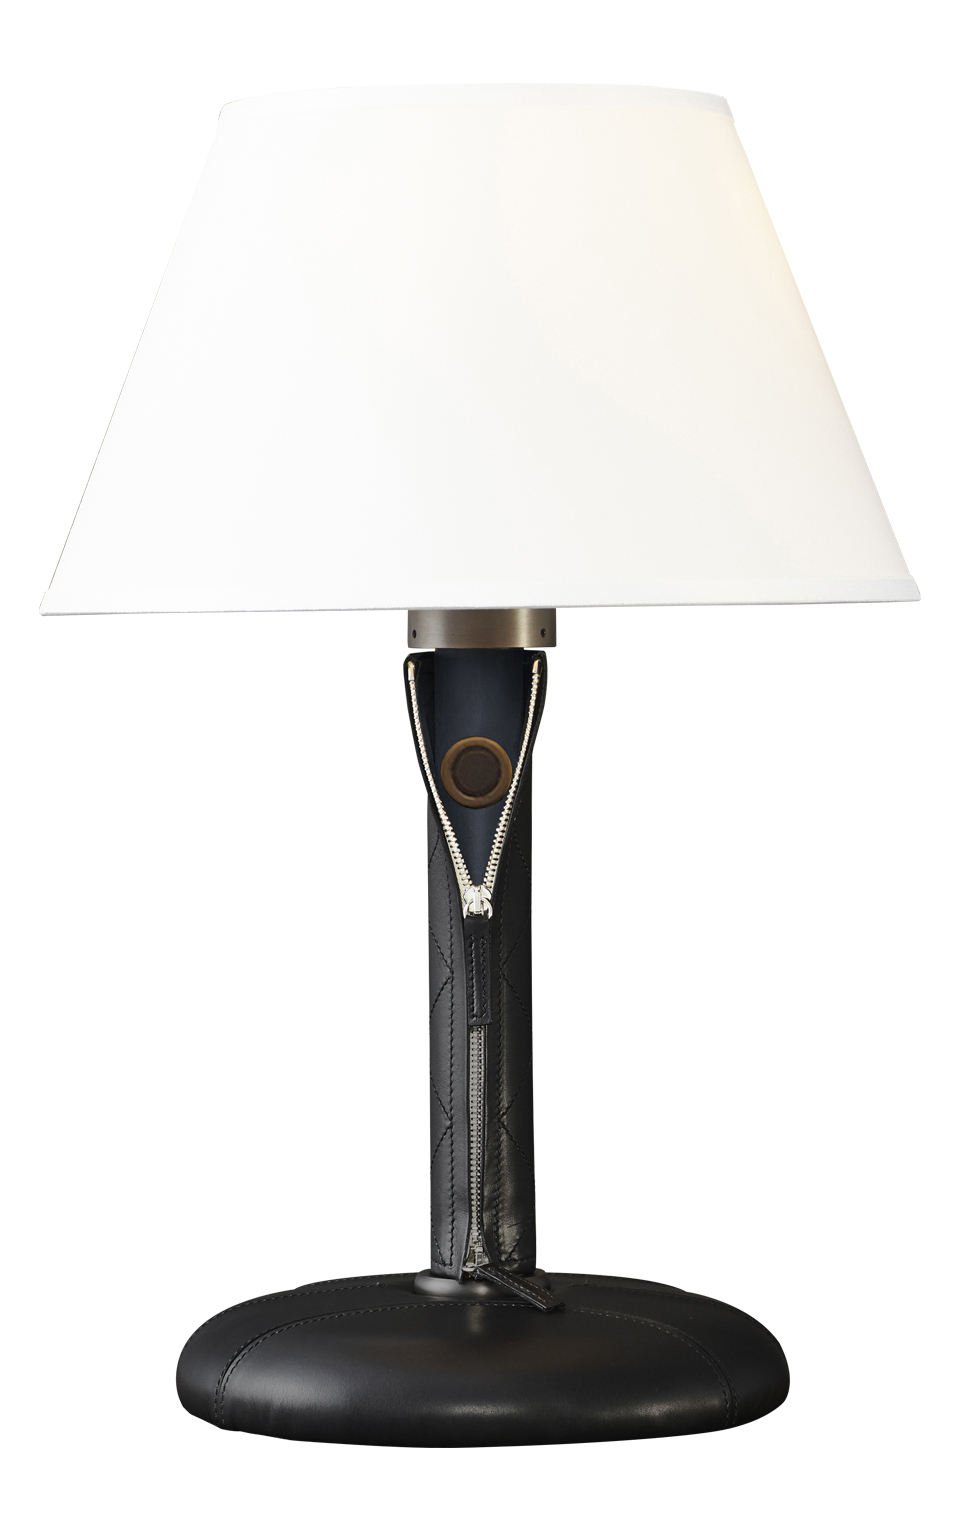 Zip est une lampe LED à poser, avec un pied en bois ou avec revêtement en en cuir et tissu, avec des finitions en bronze et un abat-jour en lin, coton ou soie avec bordure cousue main. Ce luminaire figure dans le catalogue Promemoria | Promemoria